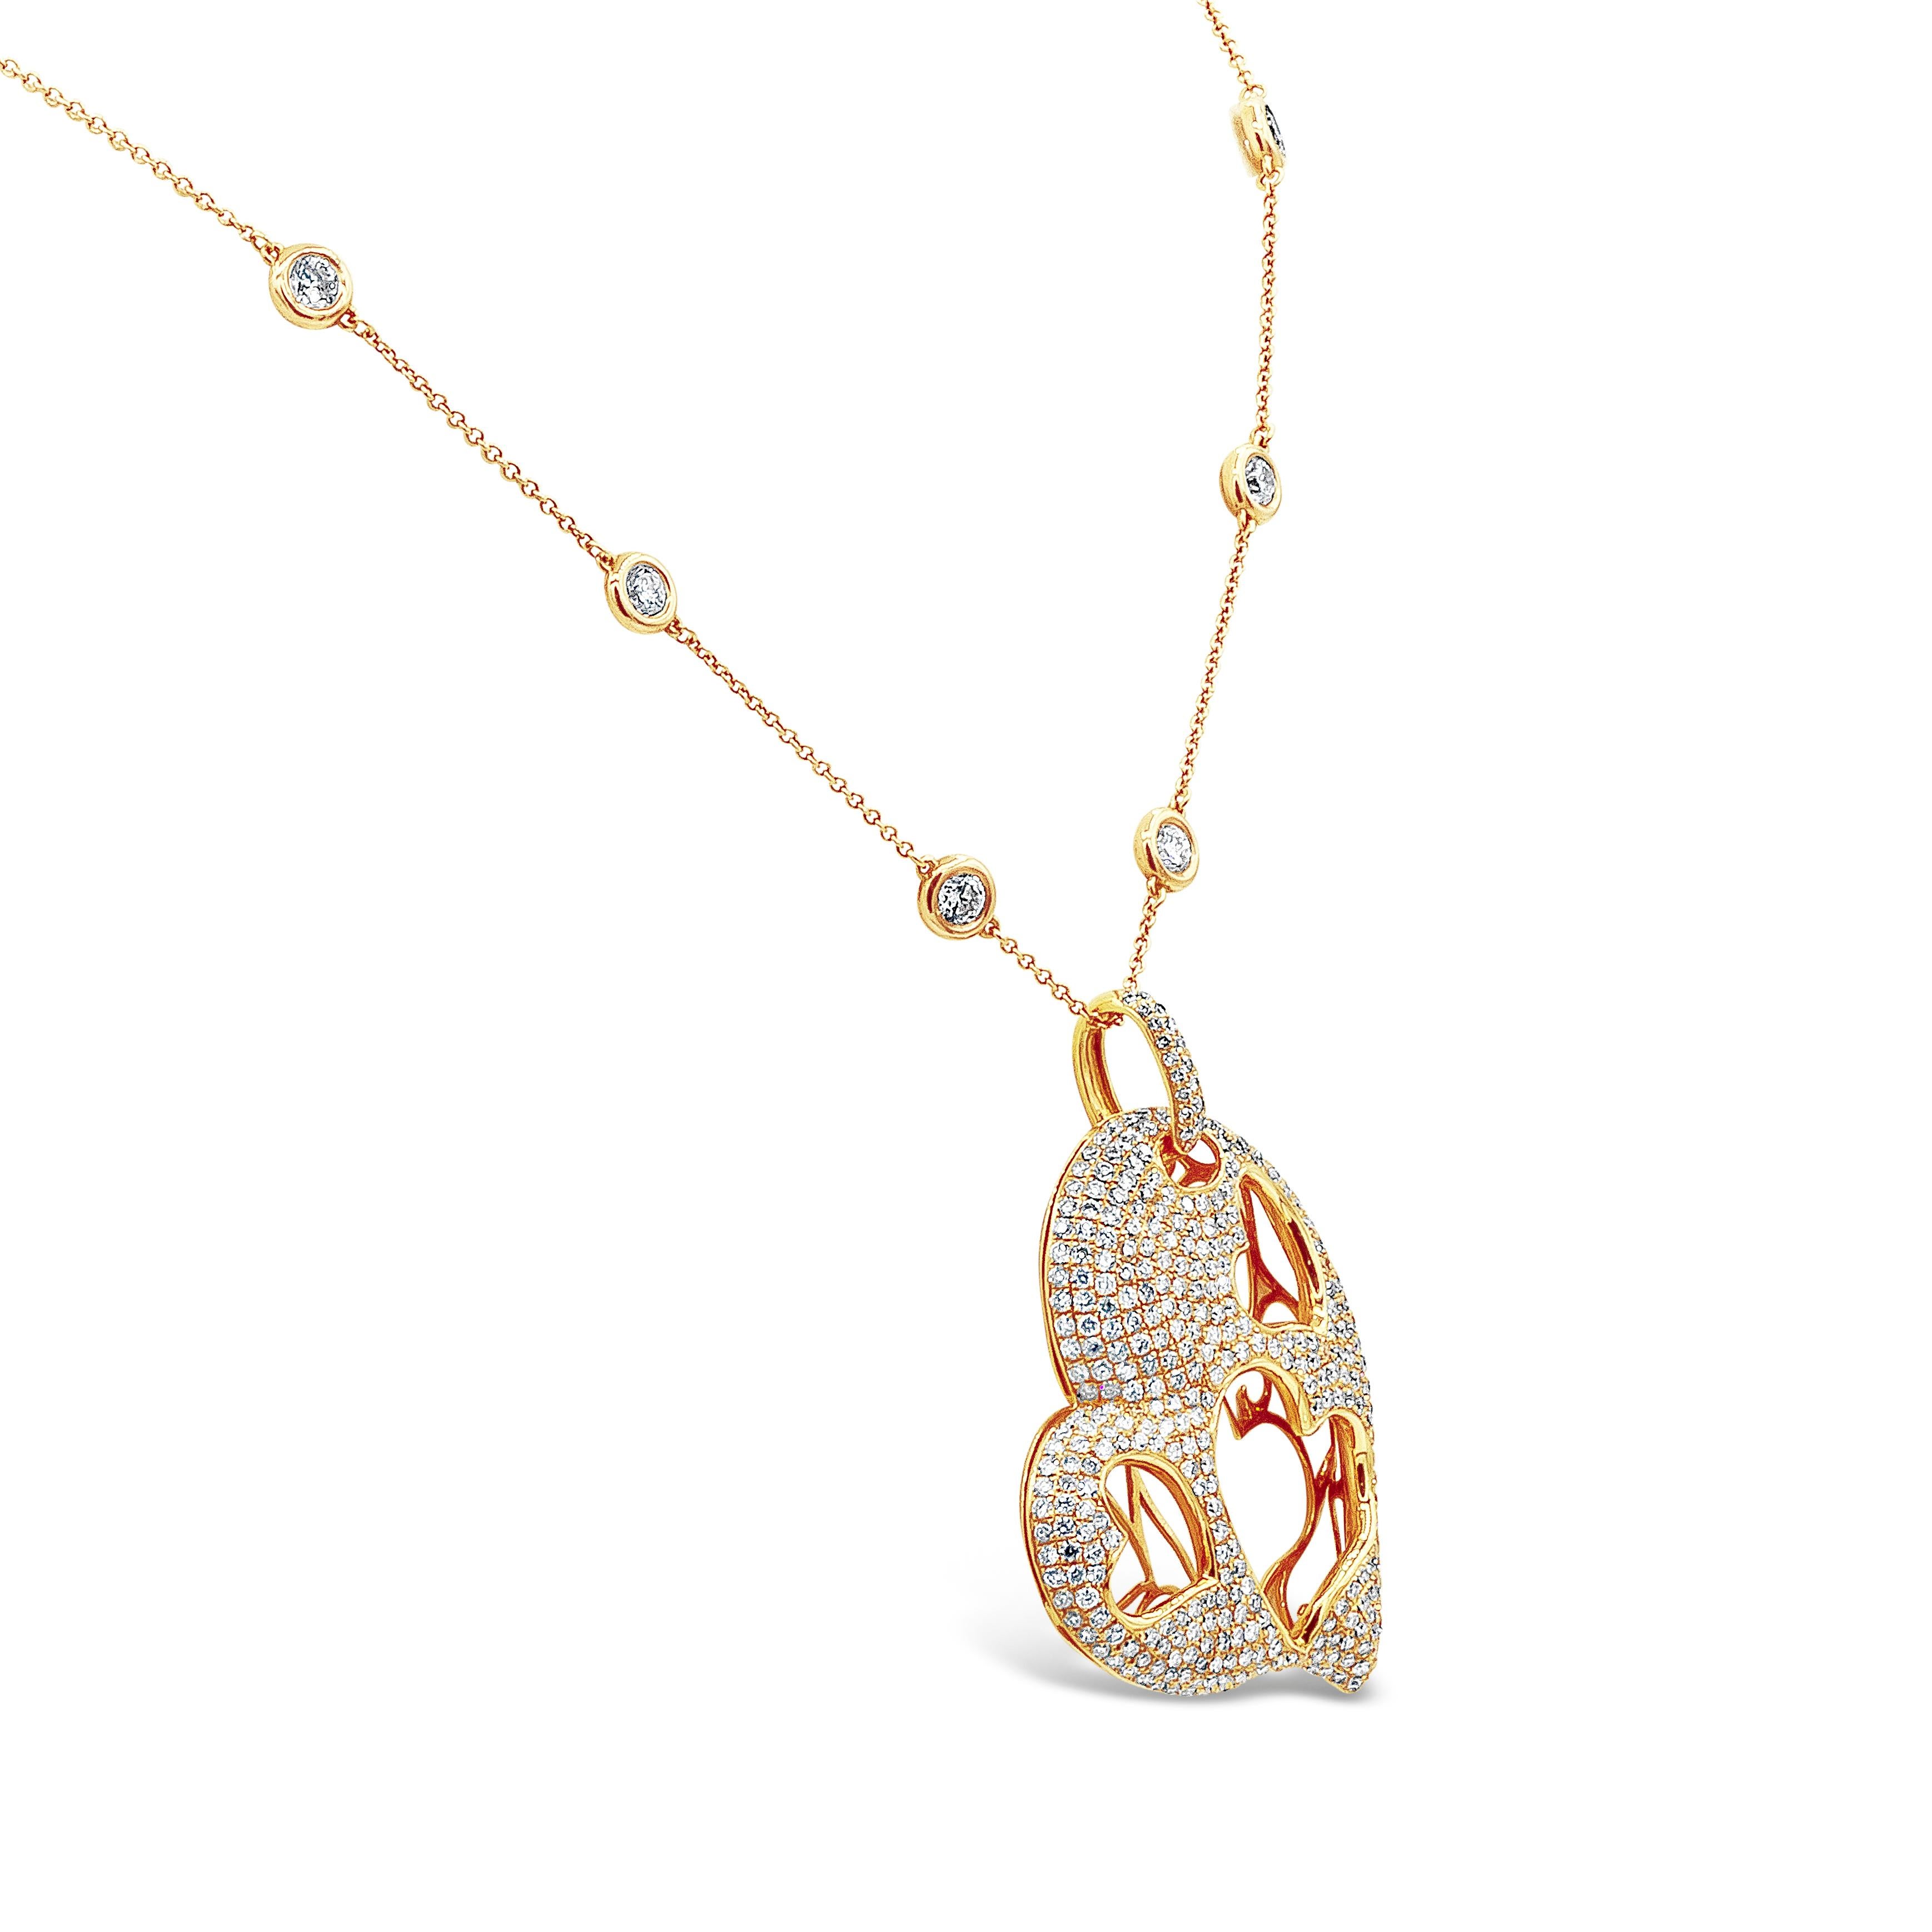 Eine modische Halskette mit dem Motiv von Lily & Co. Int. durchbrochener herzförmiger Anhänger, mikrogefasst mit 408 runden Brillanten von insgesamt 5,08 Karat. In einer verstellbaren 18-Zoll-Kette aus 18 Karat Roségold mit Diamanten am laufenden